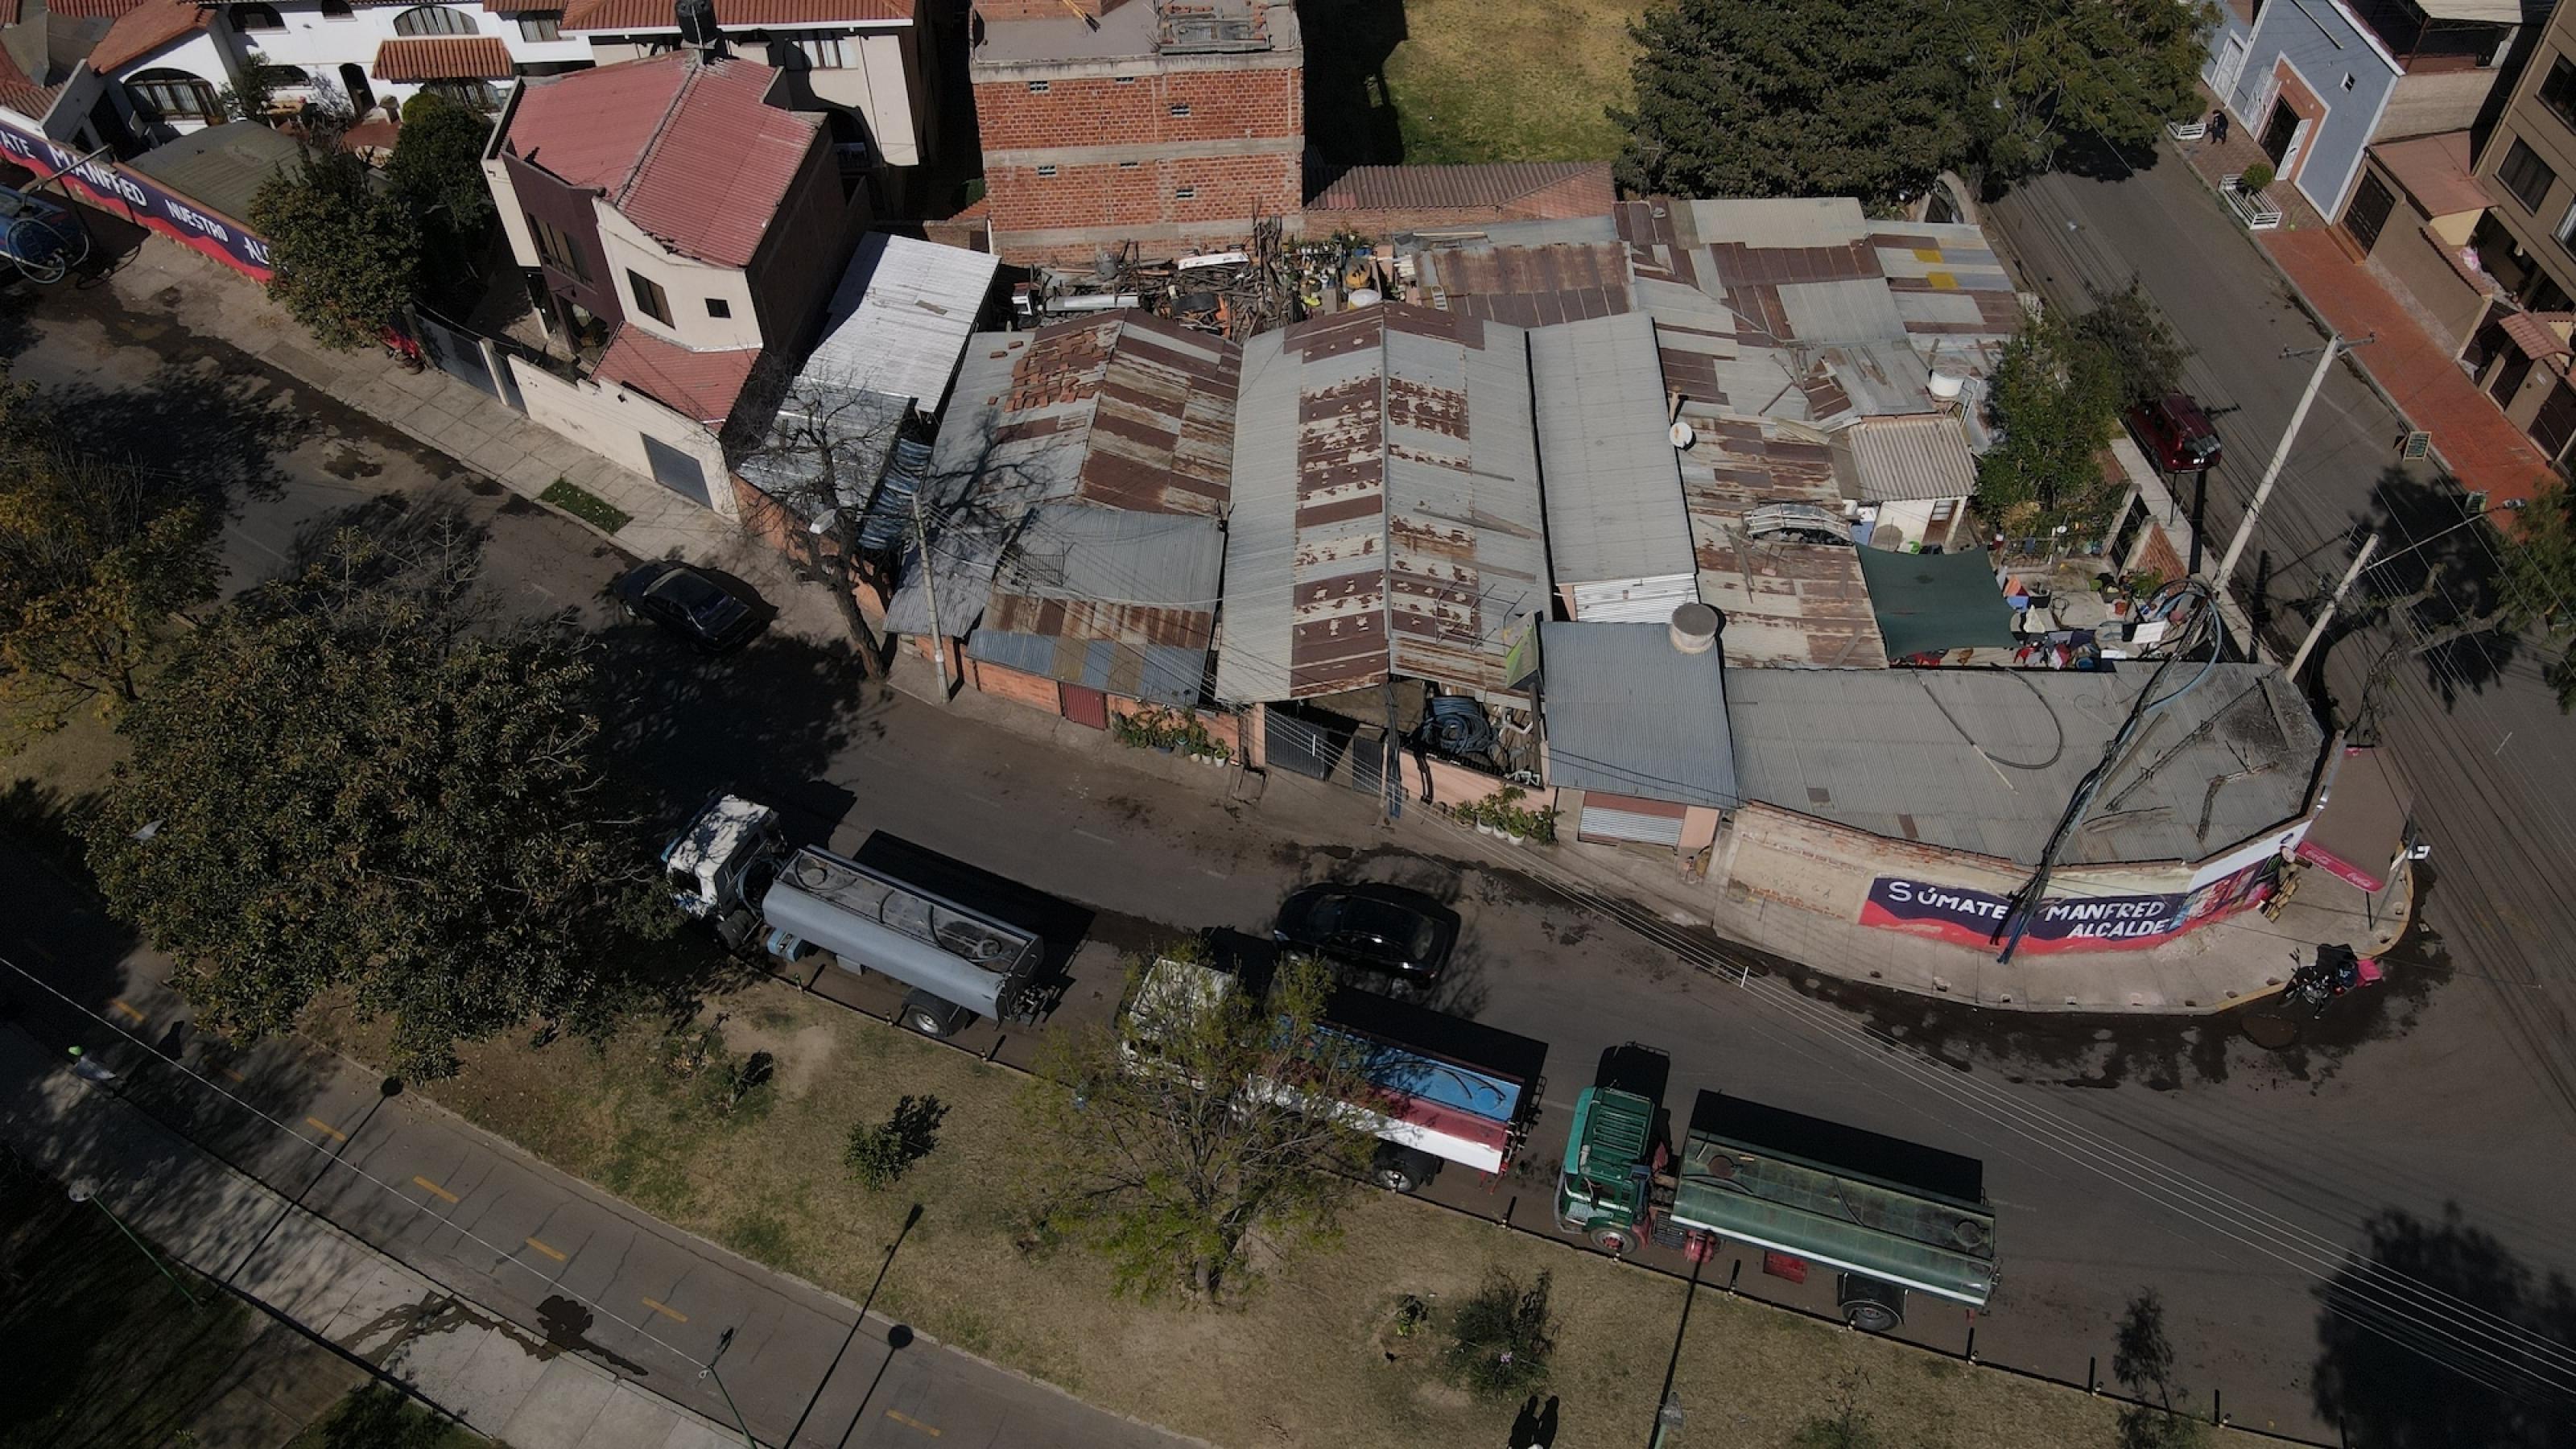 Luftaufnahme zeigt ausgetrockneten Parkstreifen, an dem hintereinander mehrer Tankwagen stehen. Parallel zu ihnen ist ein Block mit niedrigen Gebäuden oder Höfen zu sehen, die mit rostenden Blechdächern gedeckt sind.